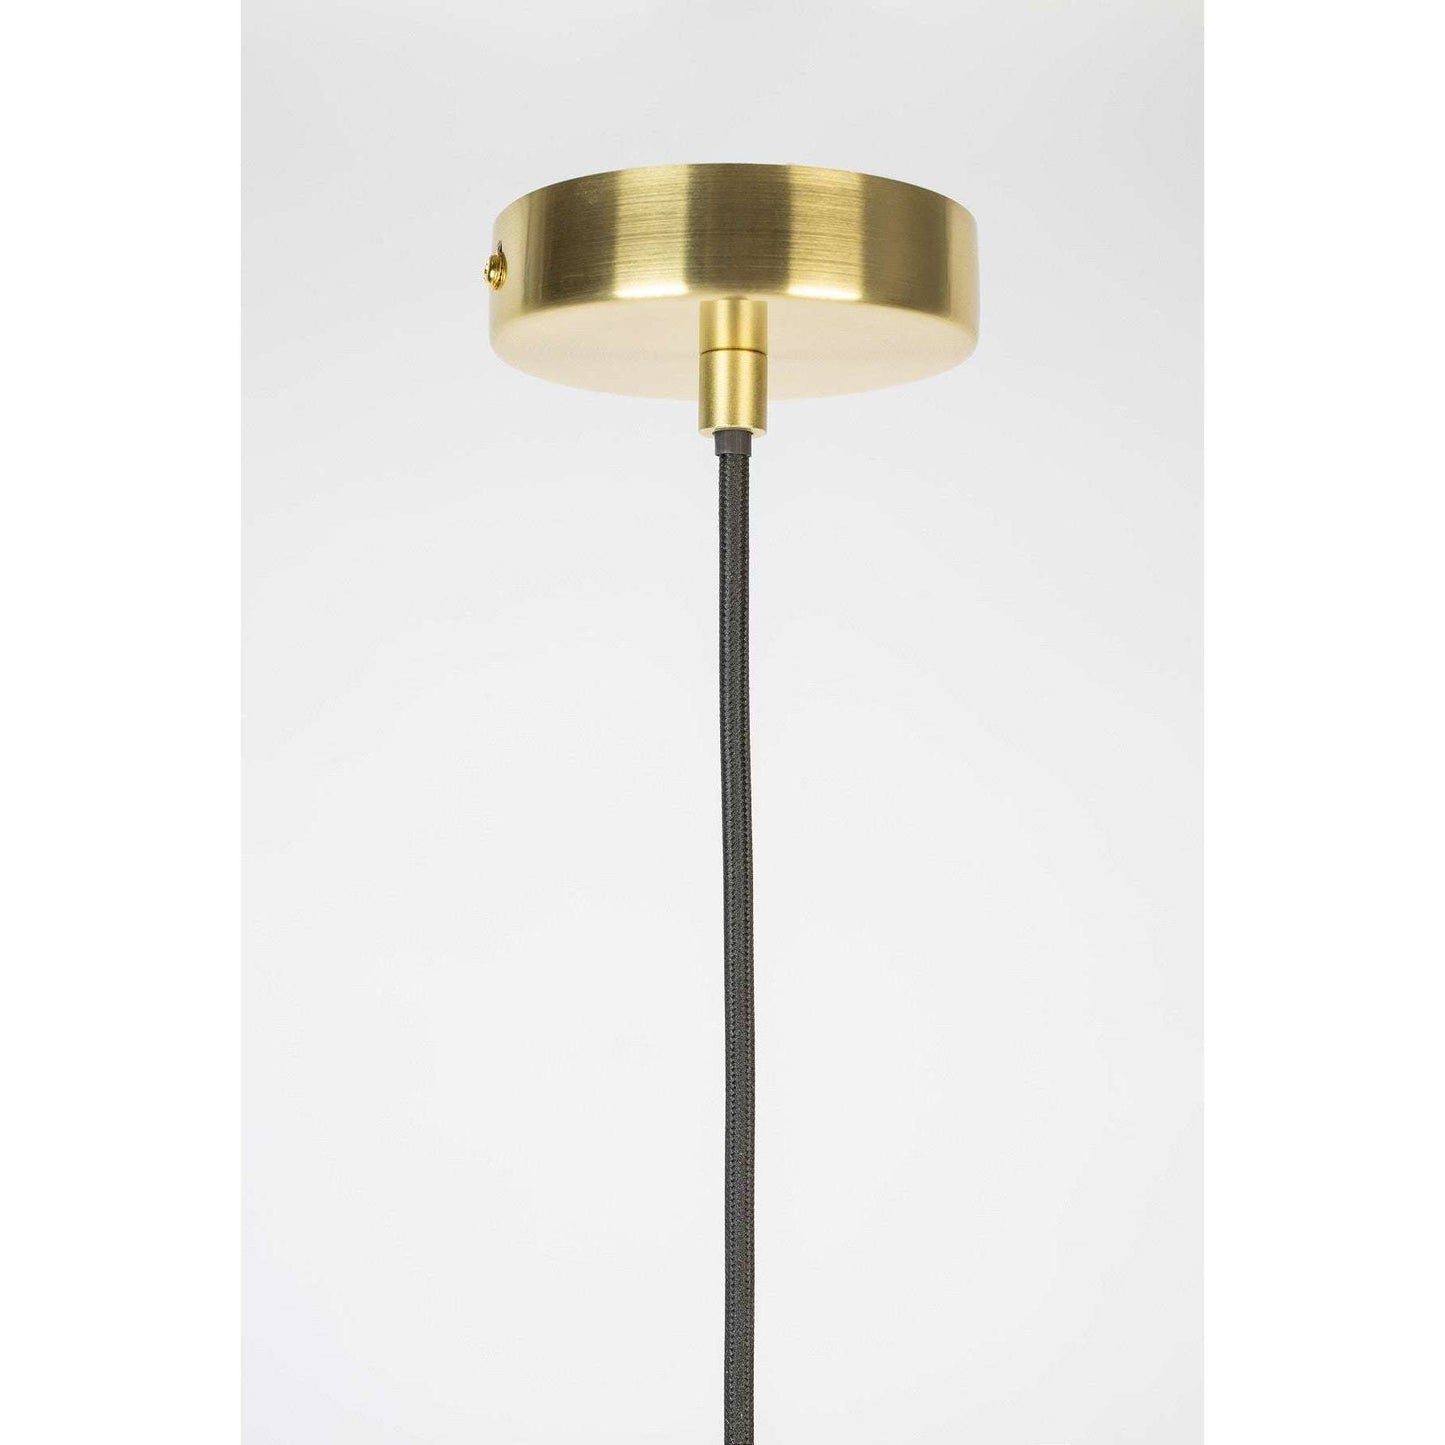 Staerkk hanglamp lauren l Ø29 x  150 cm